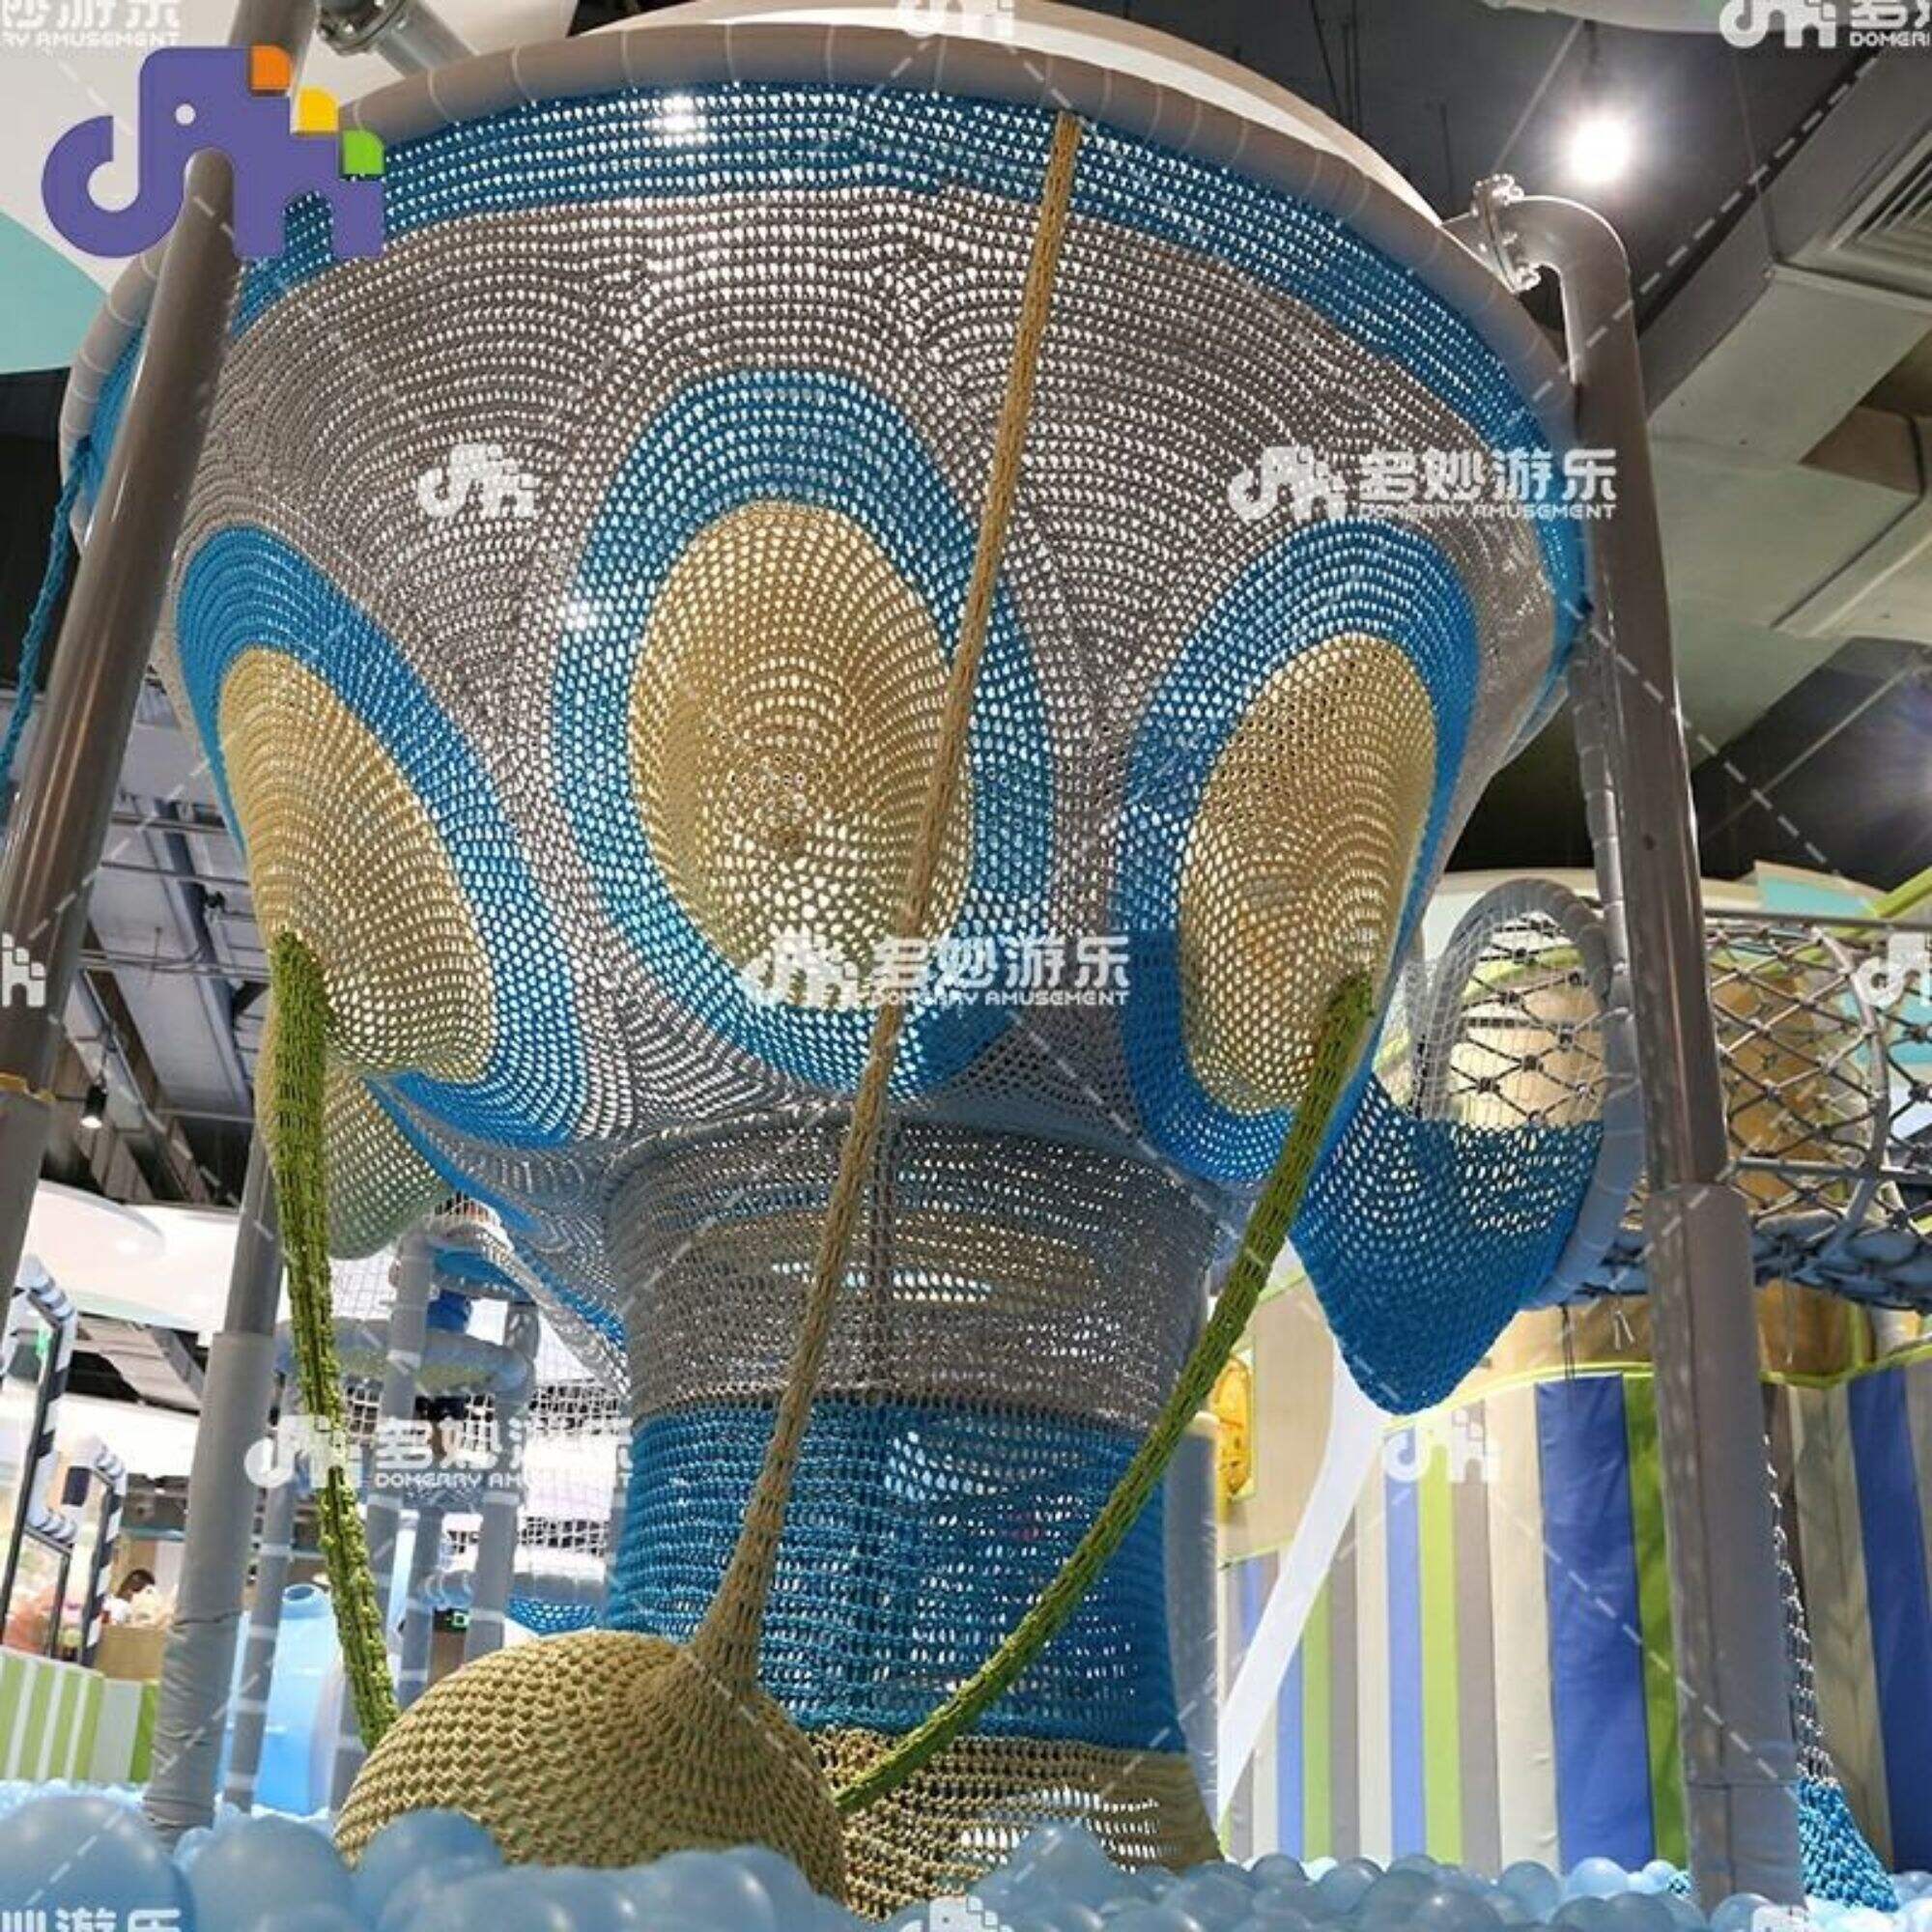 Lưới leo nhện thương mại tùy chỉnh dành cho trẻ em Sân chơi trẻ mới biết đi Thiết bị công viên giải trí trong nhà